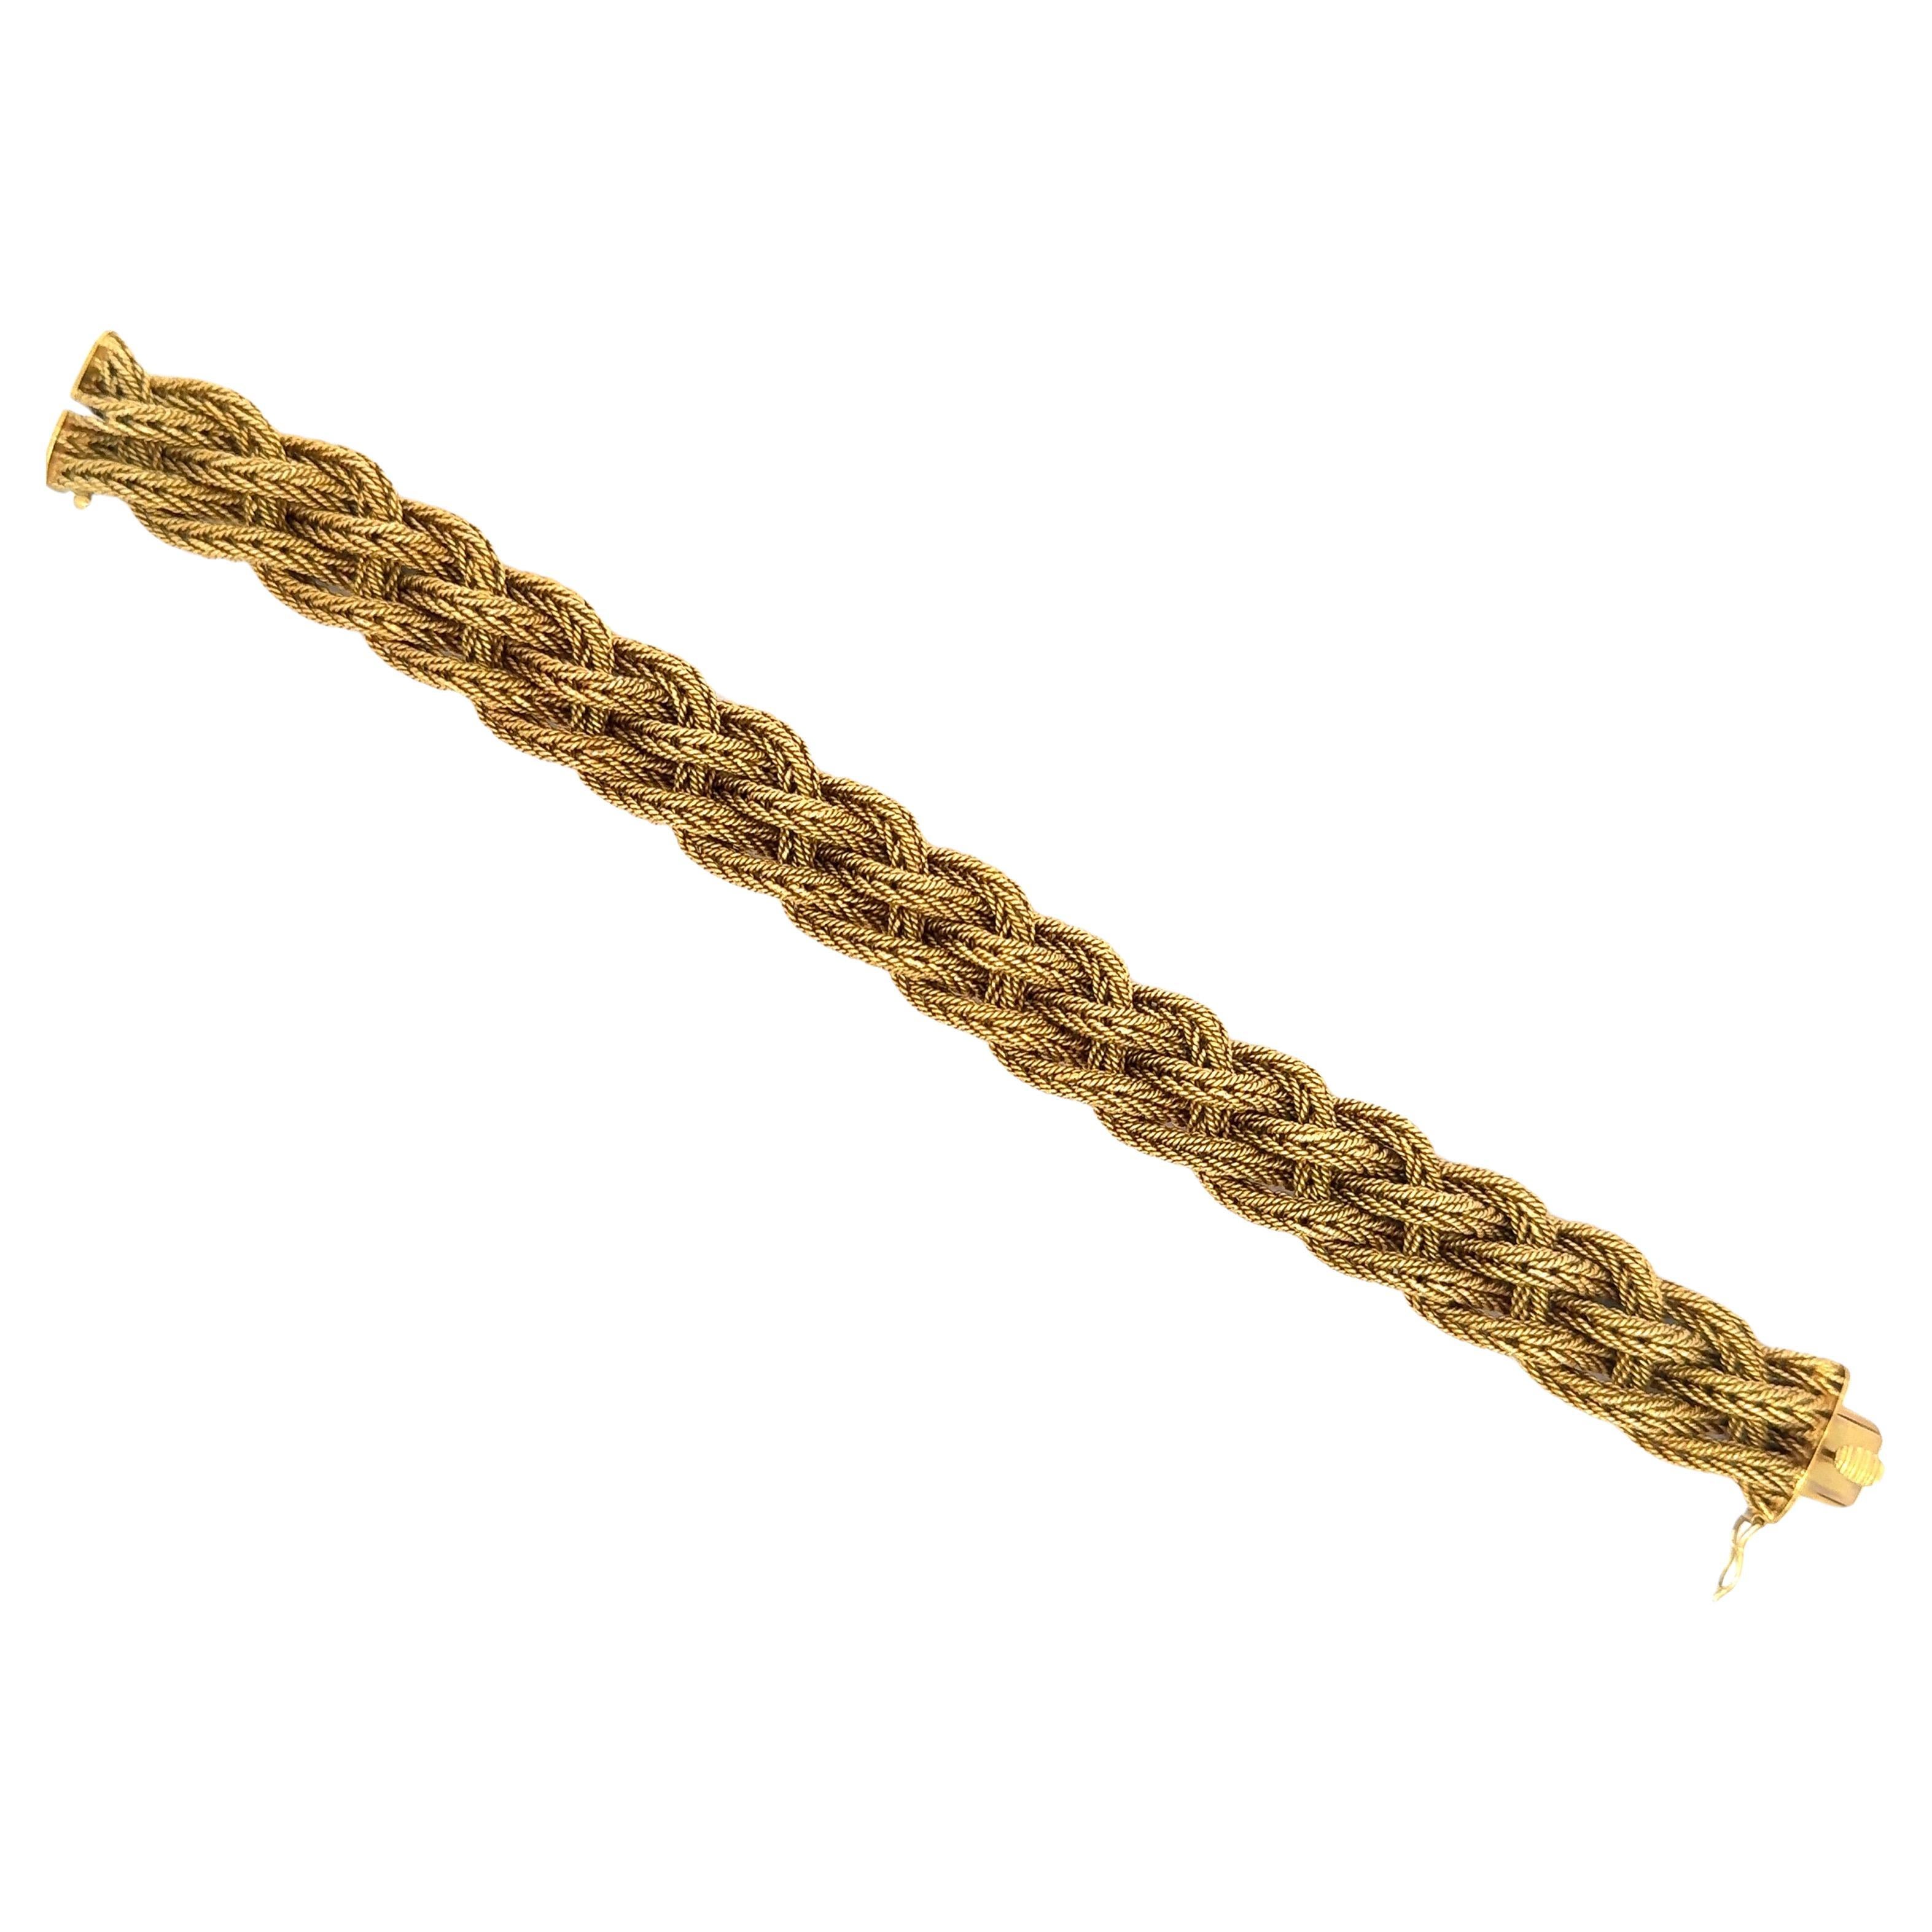 Bracelet en or jaune 18 carats à motif tressé pesant 77,7 grammes.
Beau et lourd !

